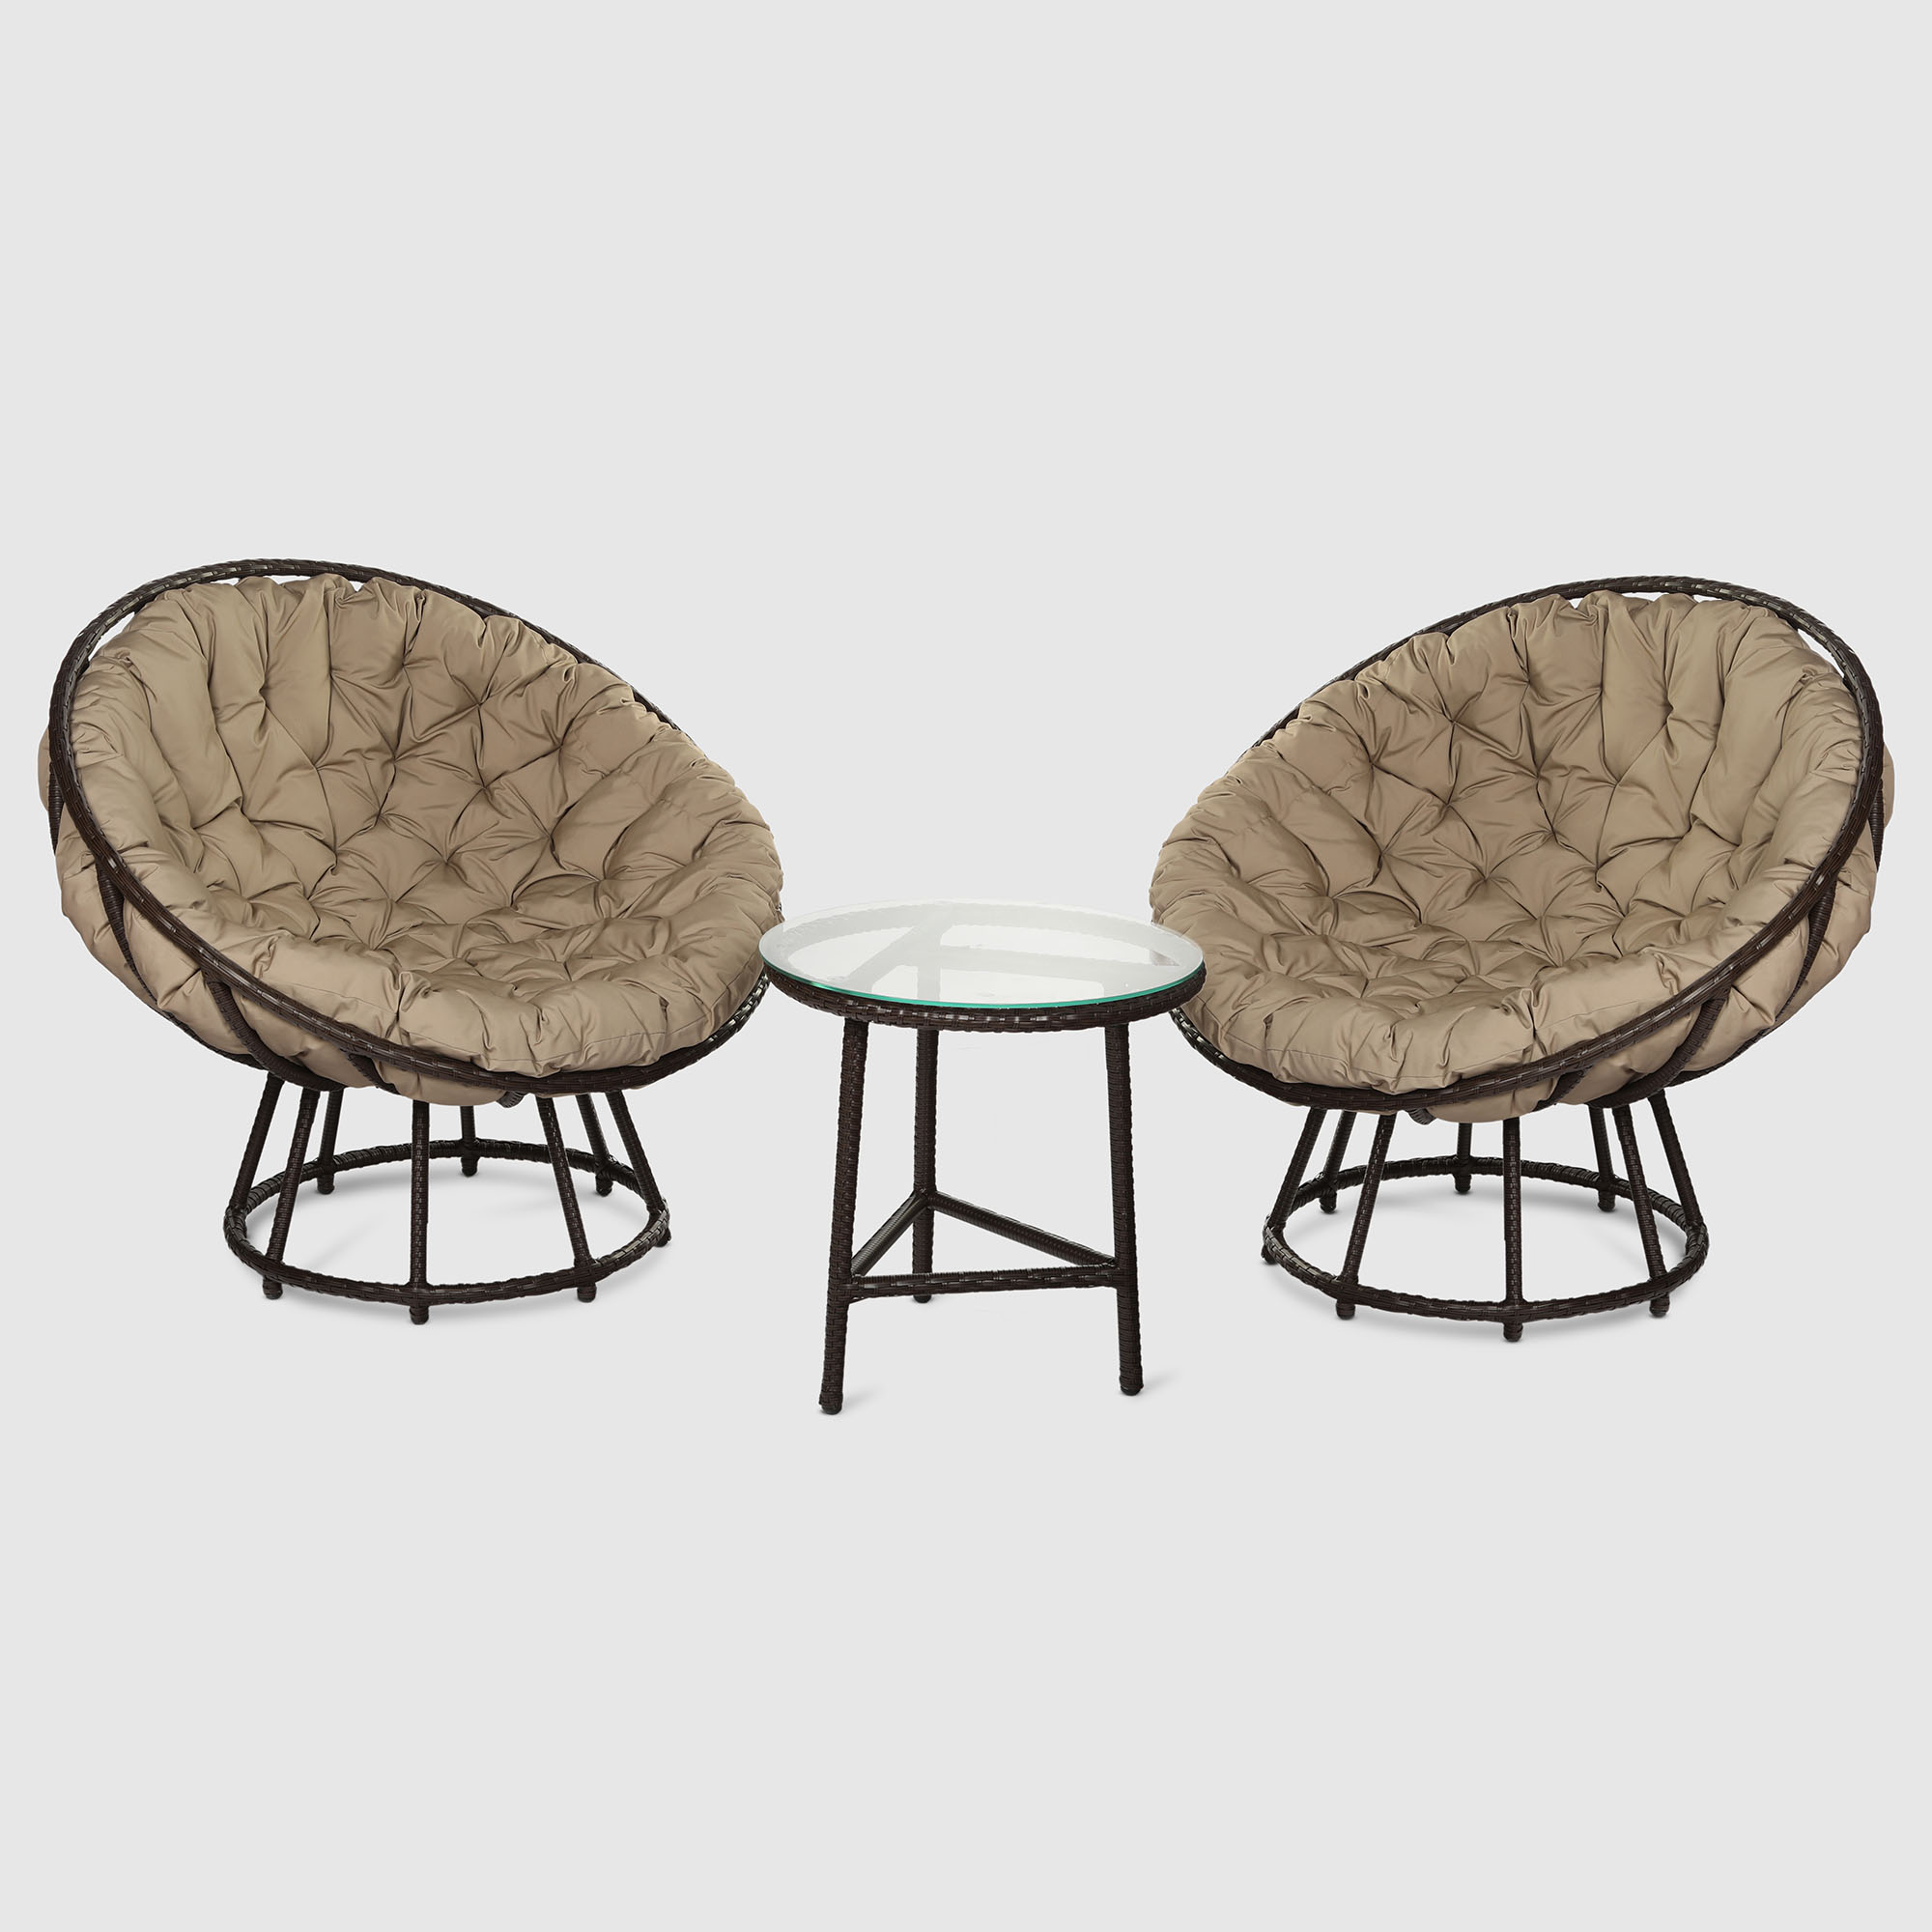 Комплект мебели Ns Rattan 3 предмета террасный комплект стол со стеклом 2 кресла tetchair pelangi ротанг walnut грецкий орех